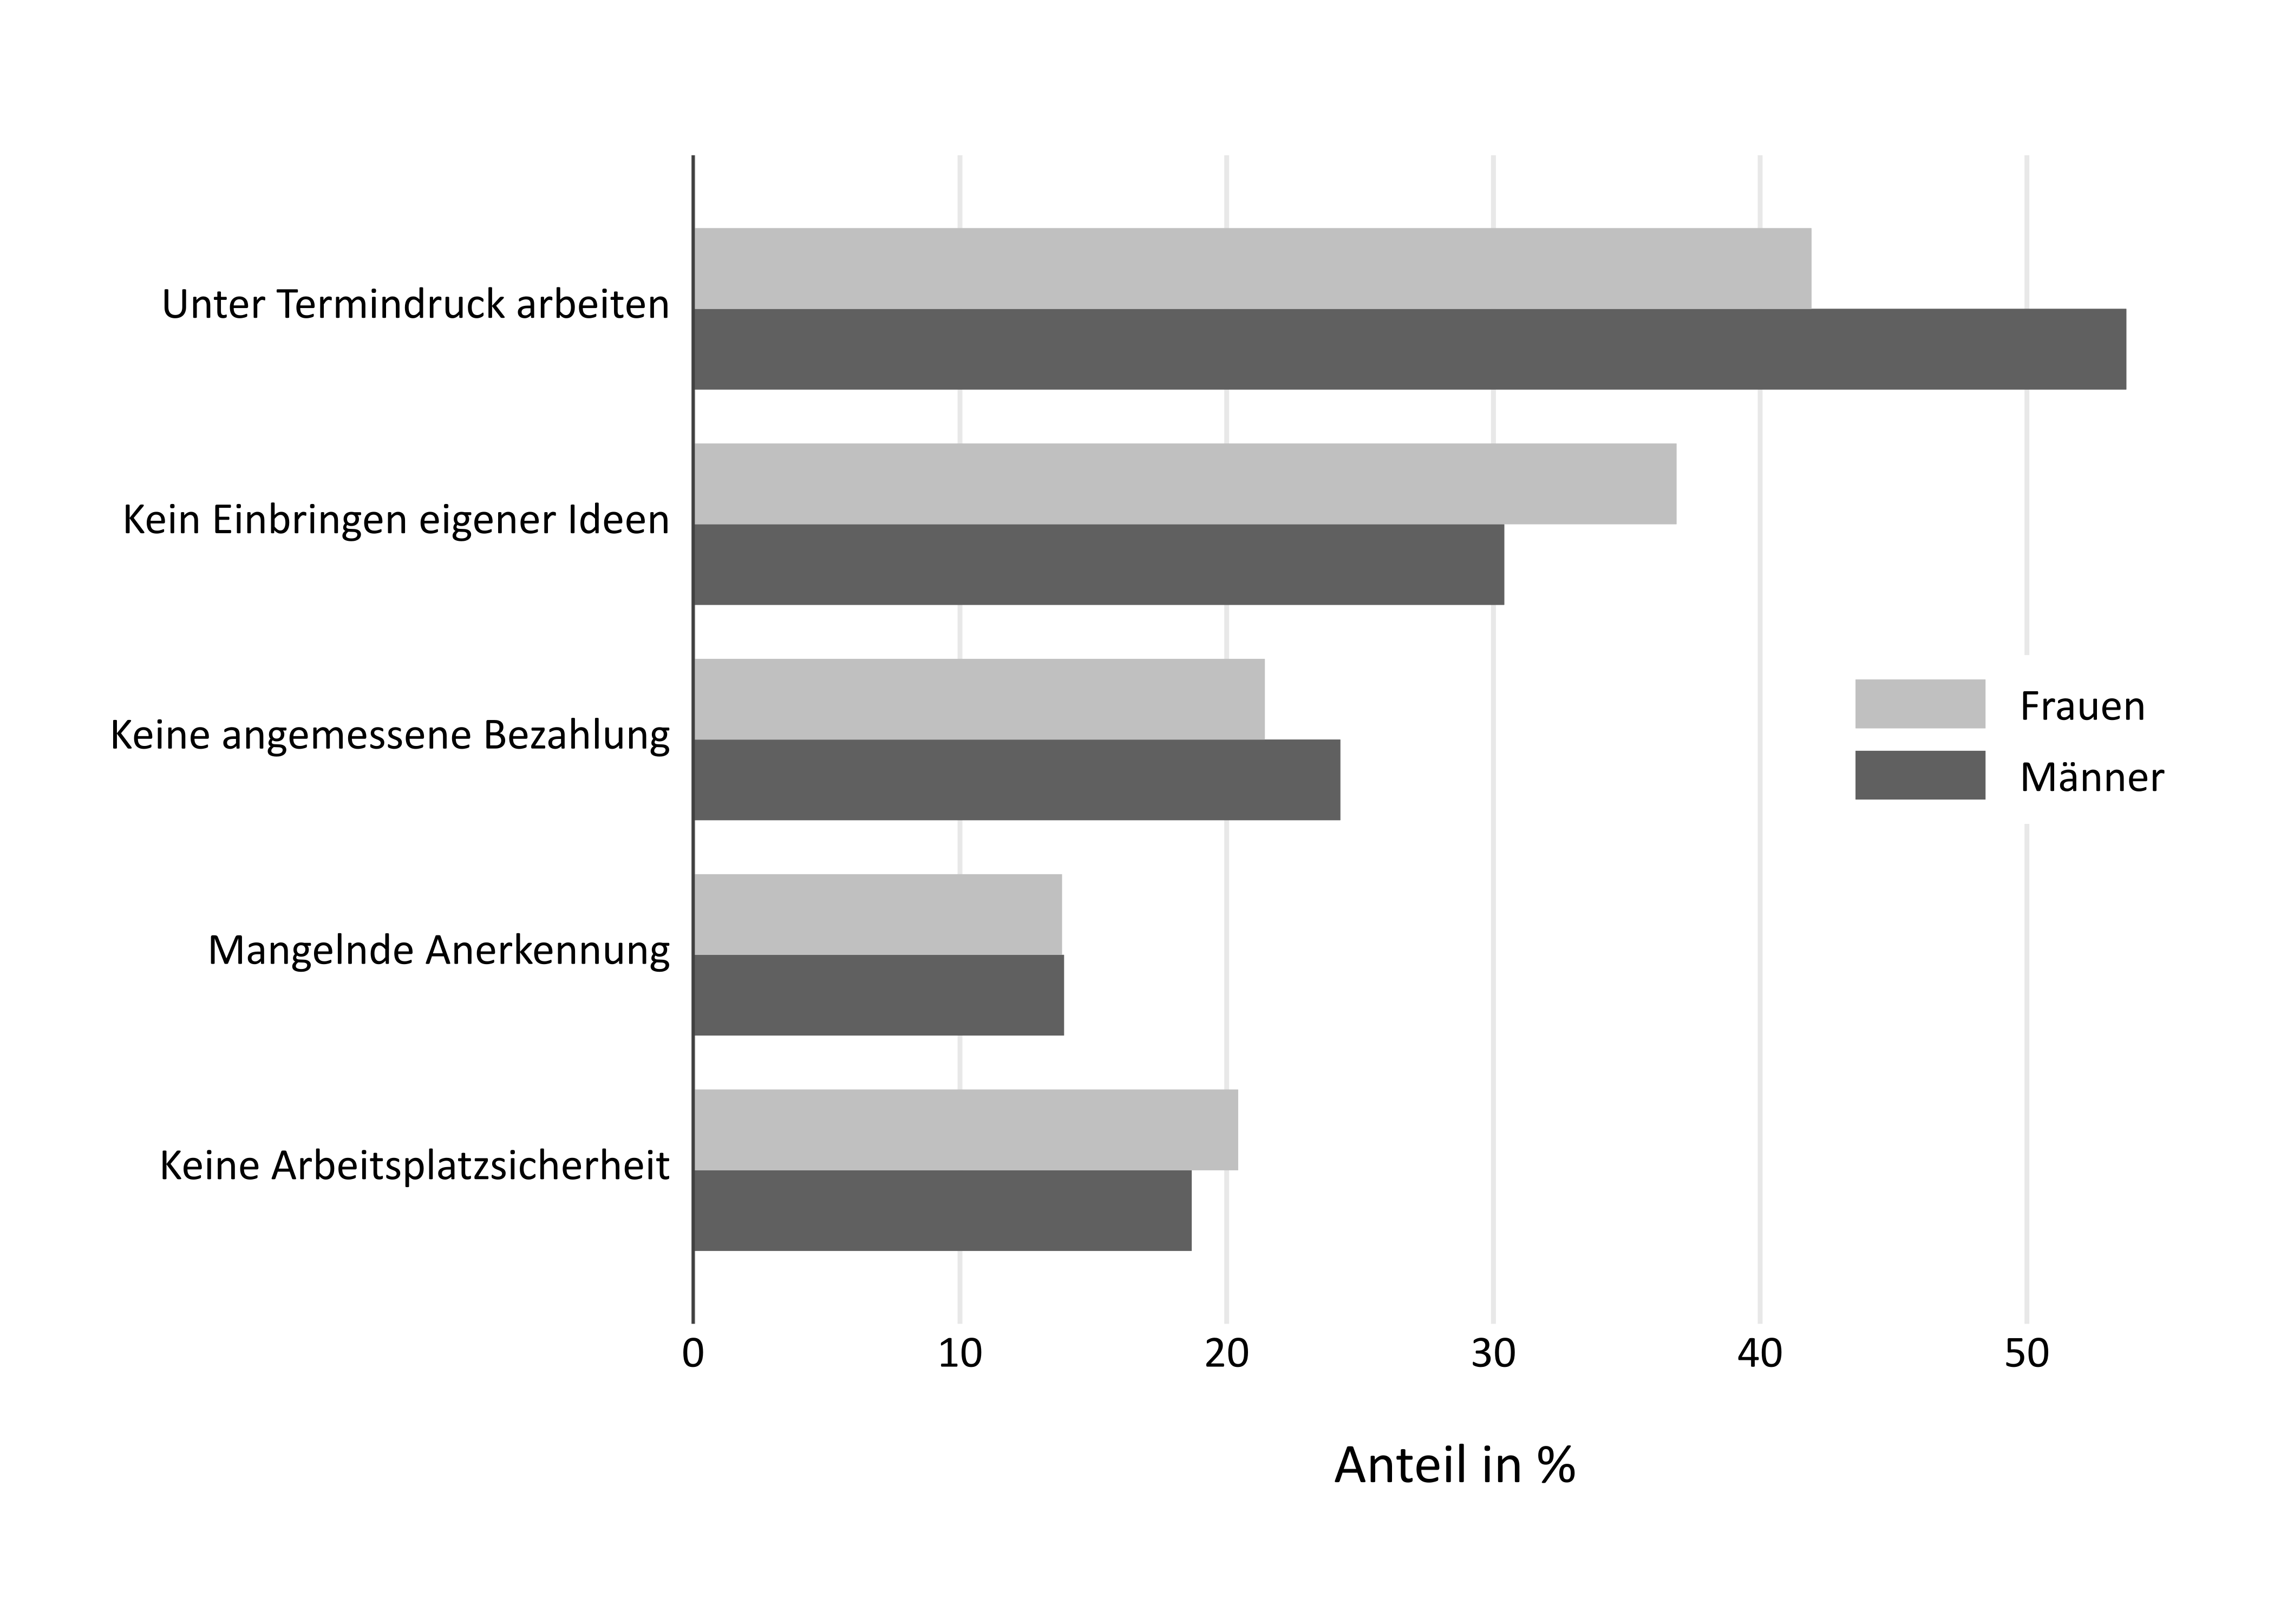 Abbildung 2: Anteil an Erwerbstätigen mit ausgewählten psychischen Belastungen getrennt nach Männern und Frauen für Deutschland 2015